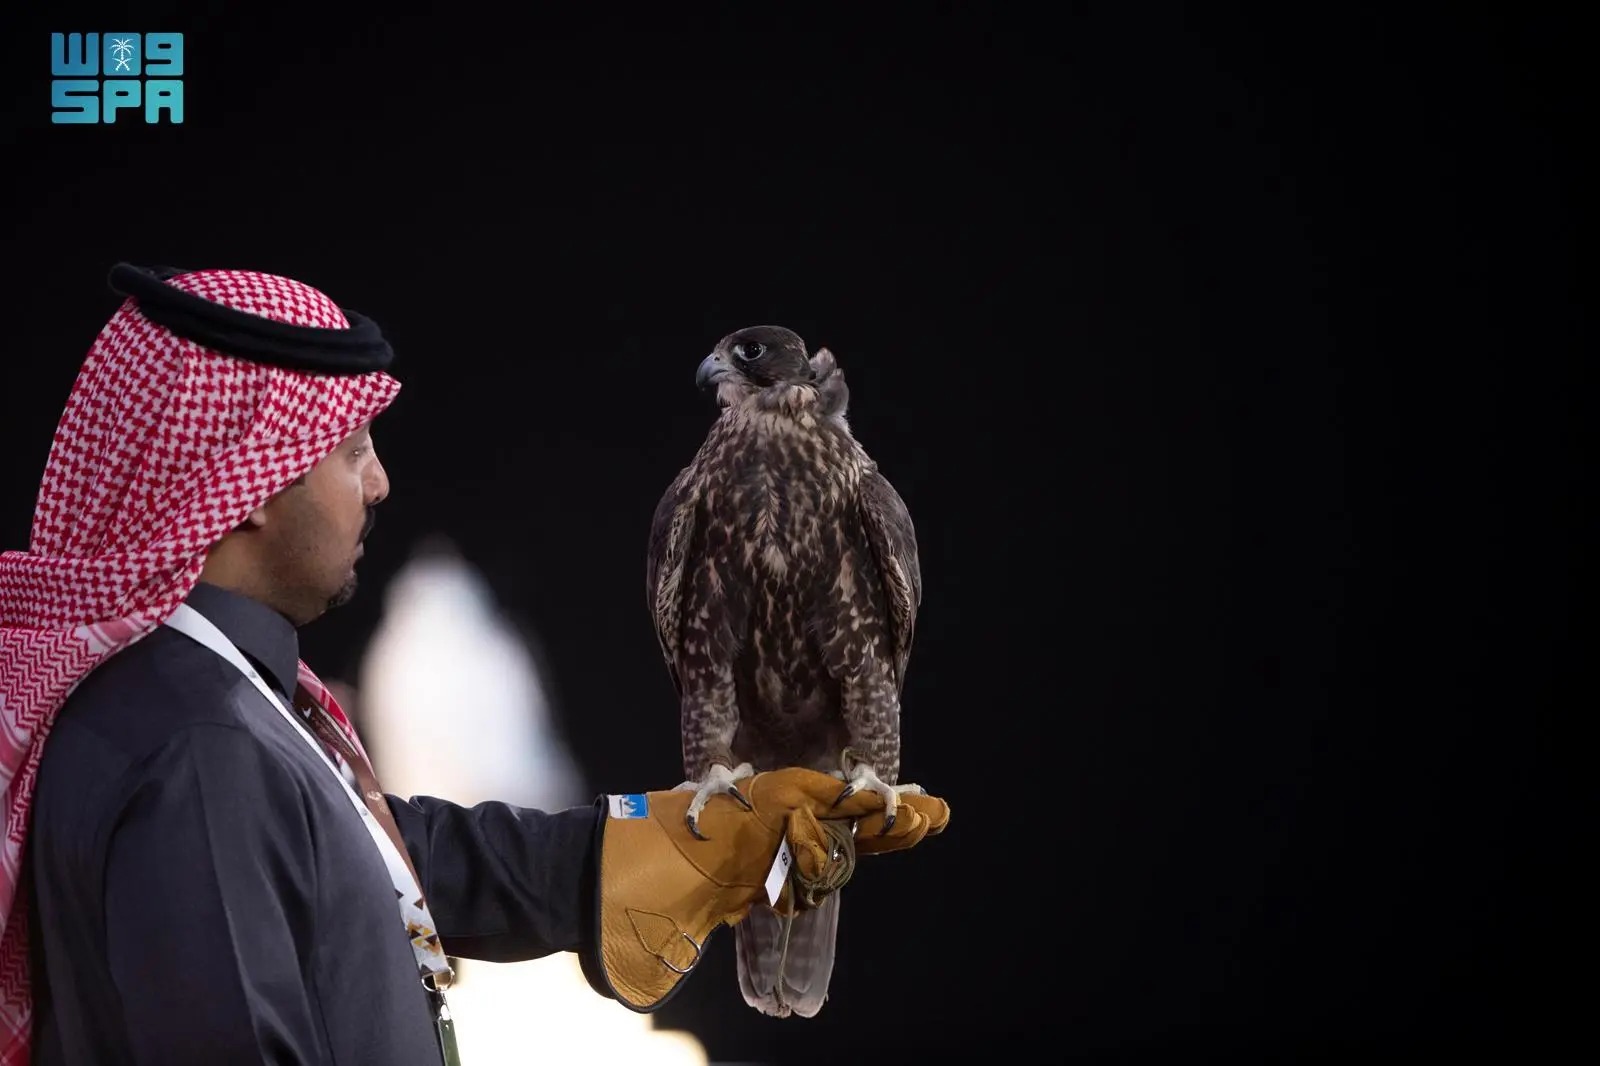 الهيئة الملكية لمحافظة العلا ونادي الصقور السعودي يطلقان النسخة الأولى من مسابقة كأس العلا للصقور